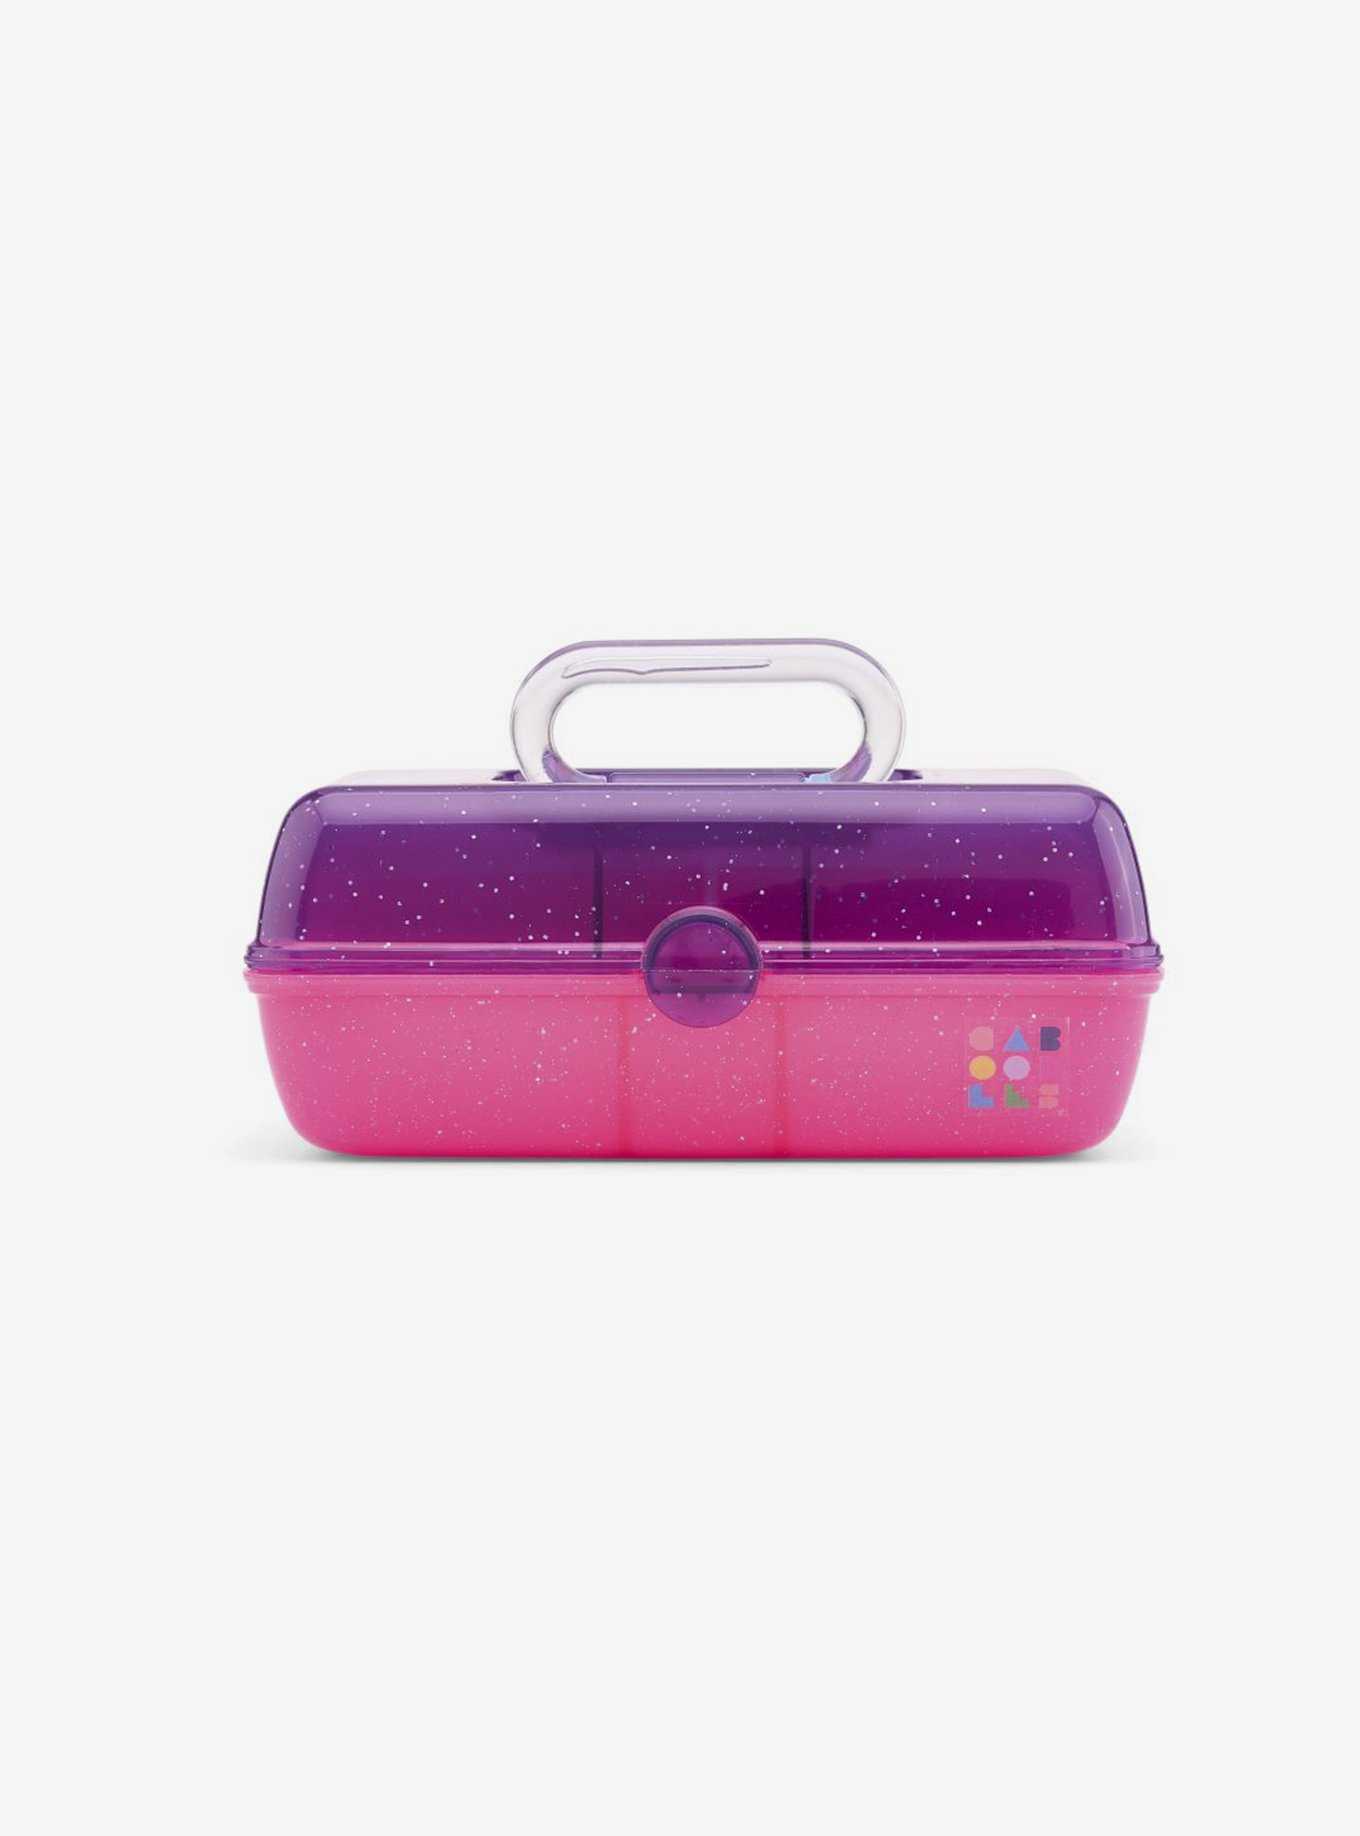 Caboodles caboodles On-The-go girl Purple Sparkle Jellies Vintage case, 1  Lb, cAB56260N